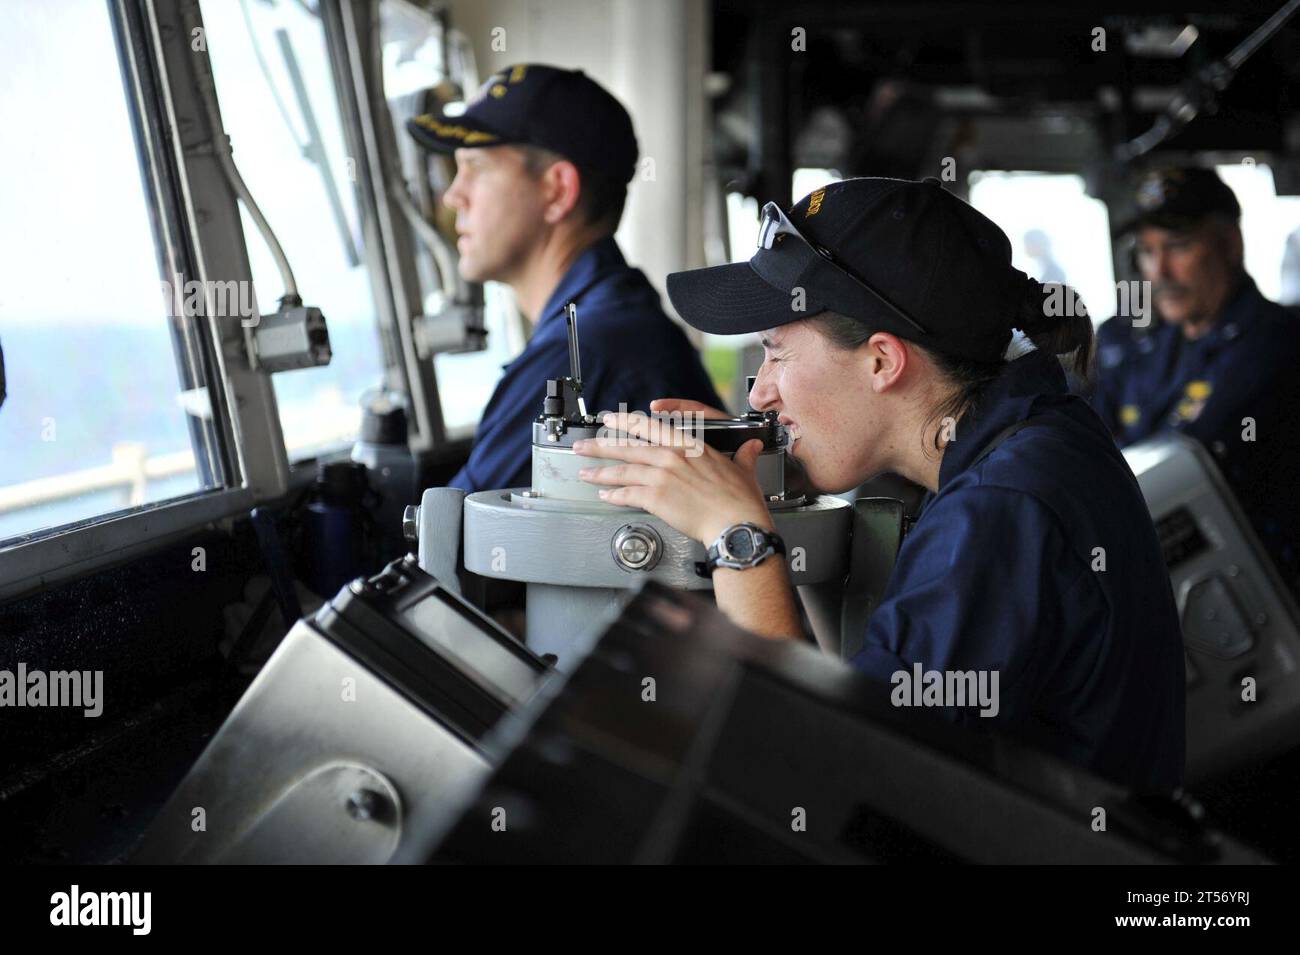 US Navy A Sailor looks through a telescopic alidade in the pilothouse.jpg Stock Photo